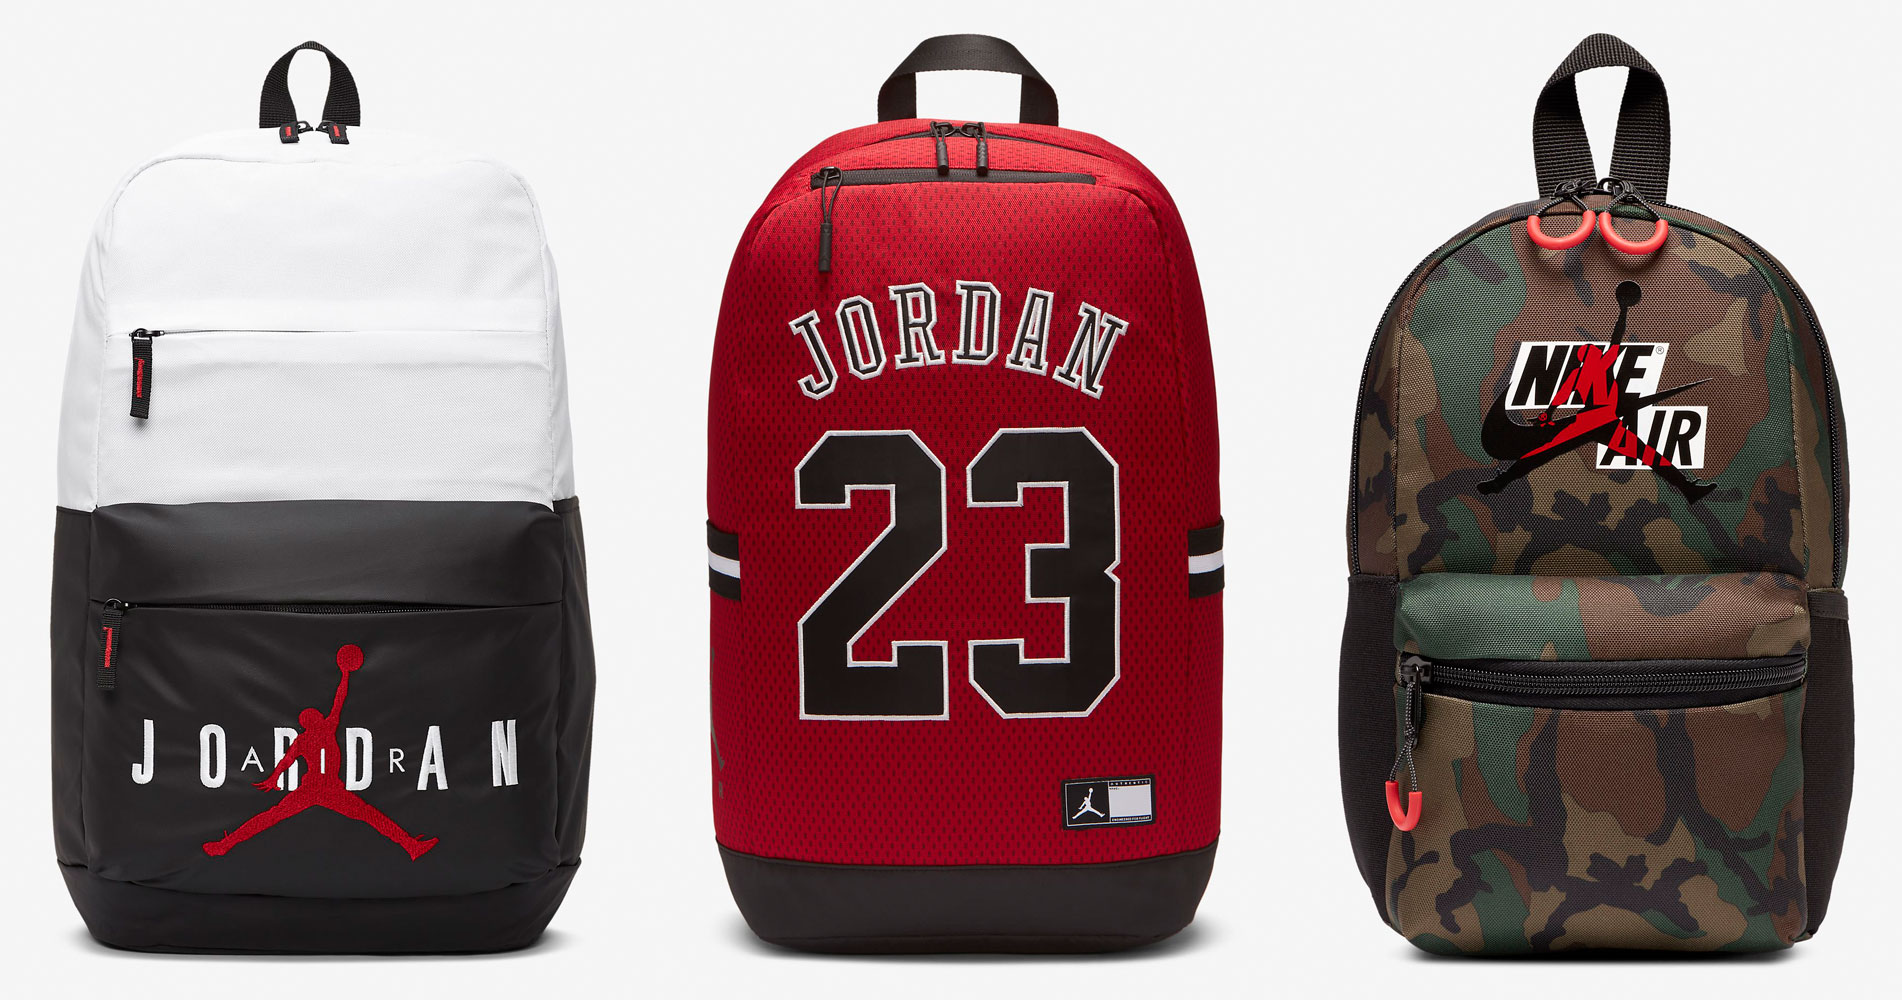 jordan 23 backpack